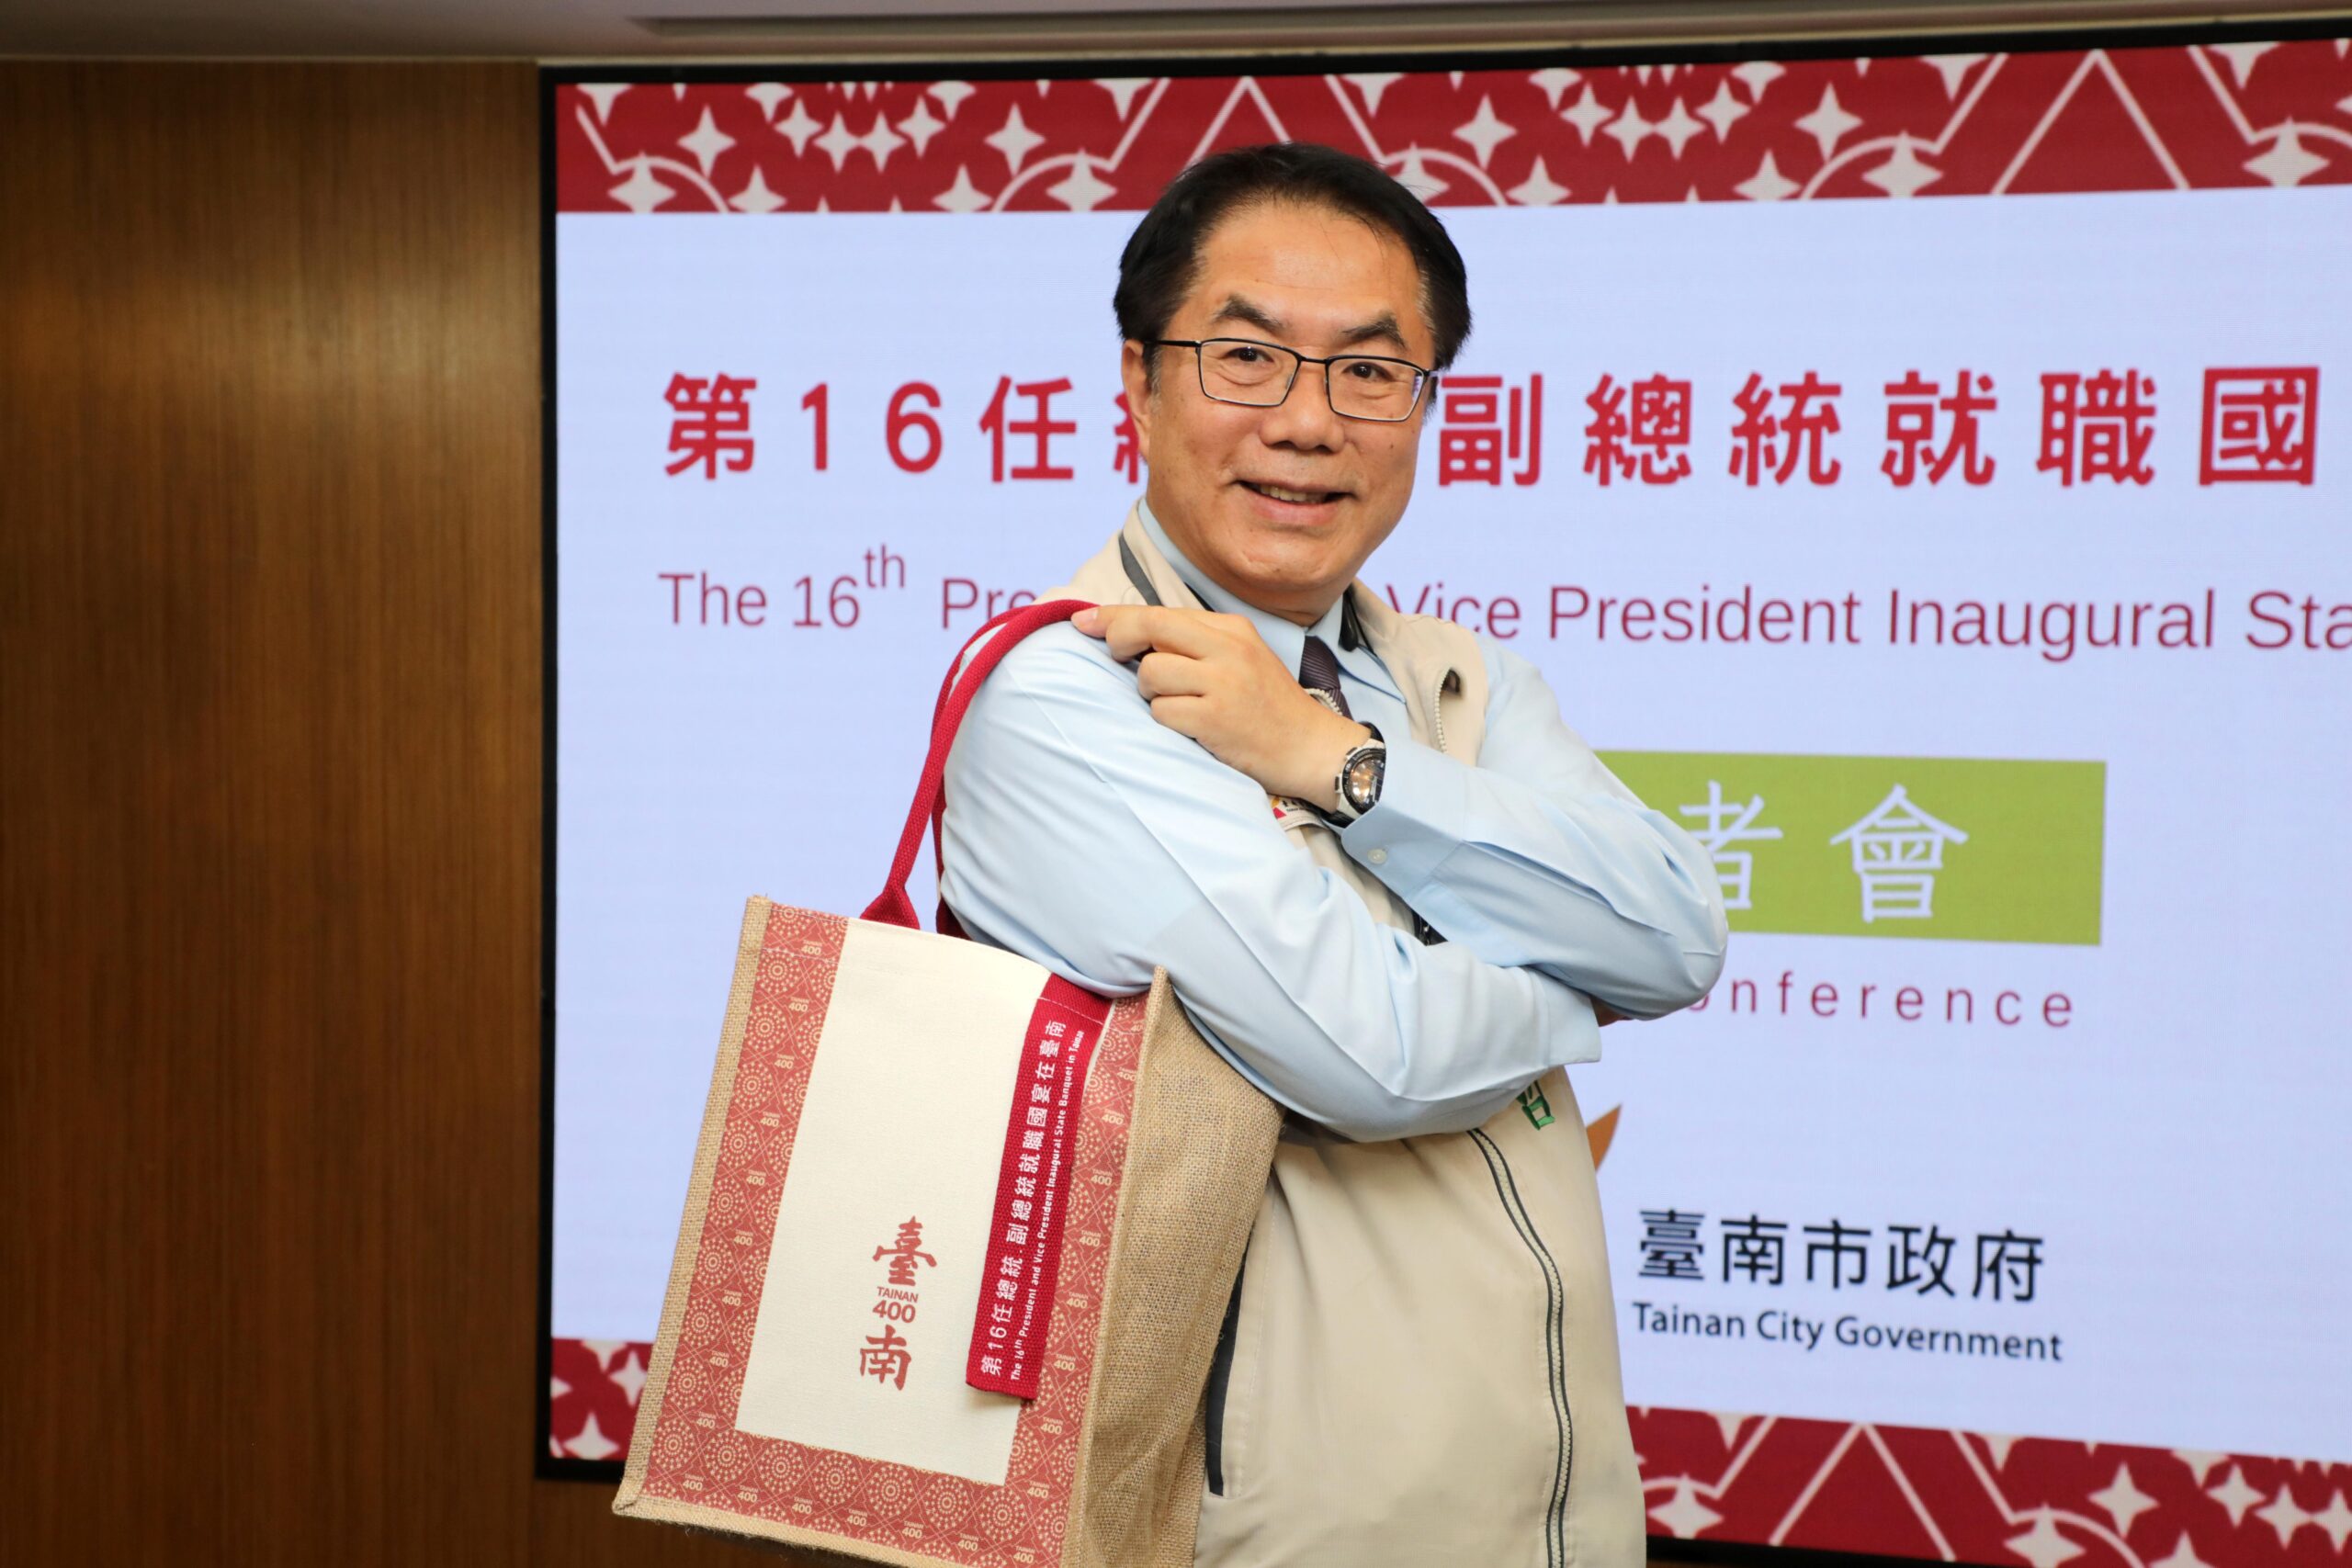 兩袋臺南特色伴手禮組合彰顯「越在地、越國際」精神